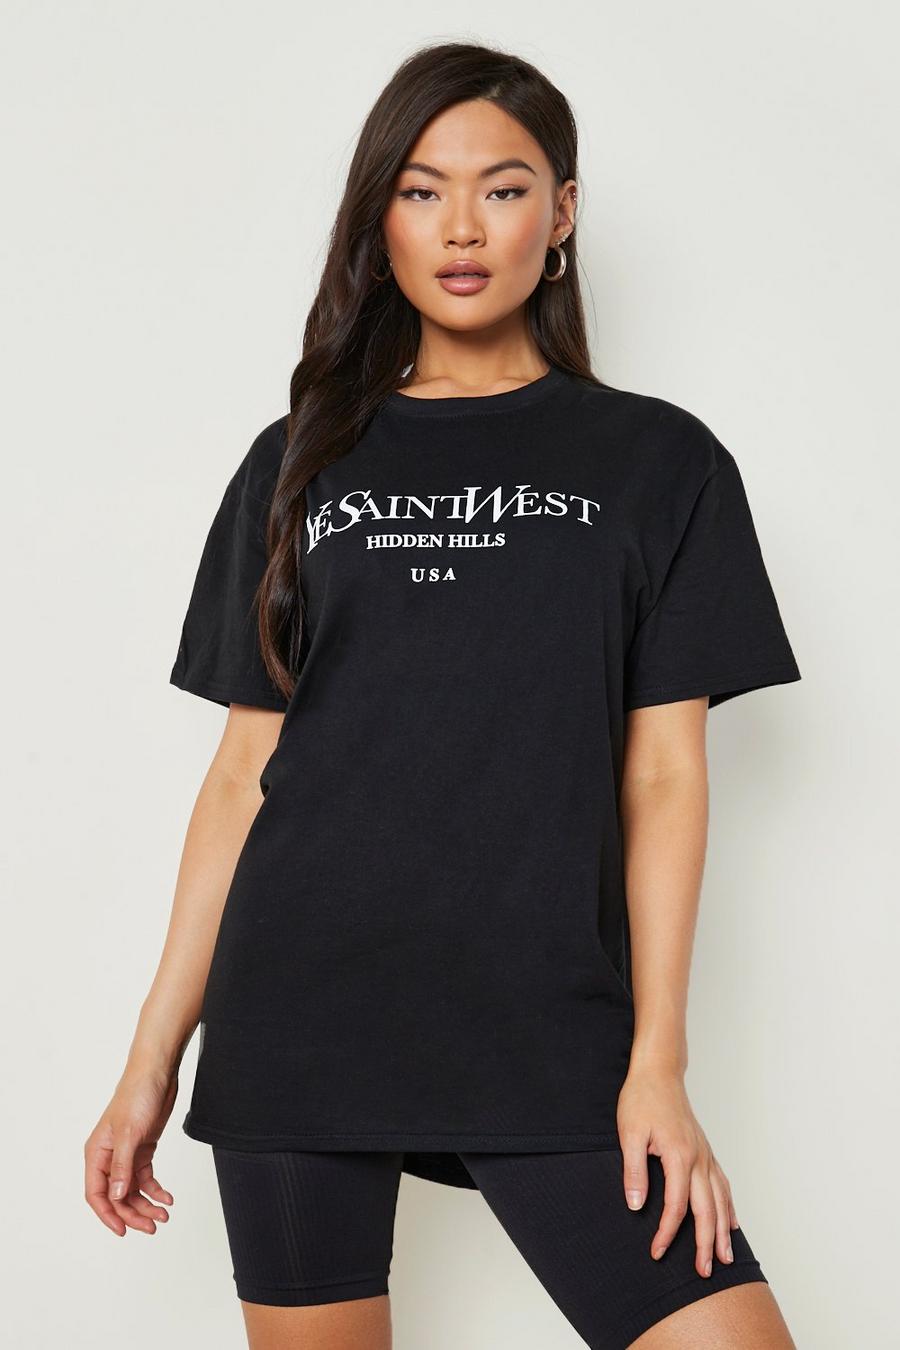 Camiseta oversize de Ye Saint West, Black image number 1